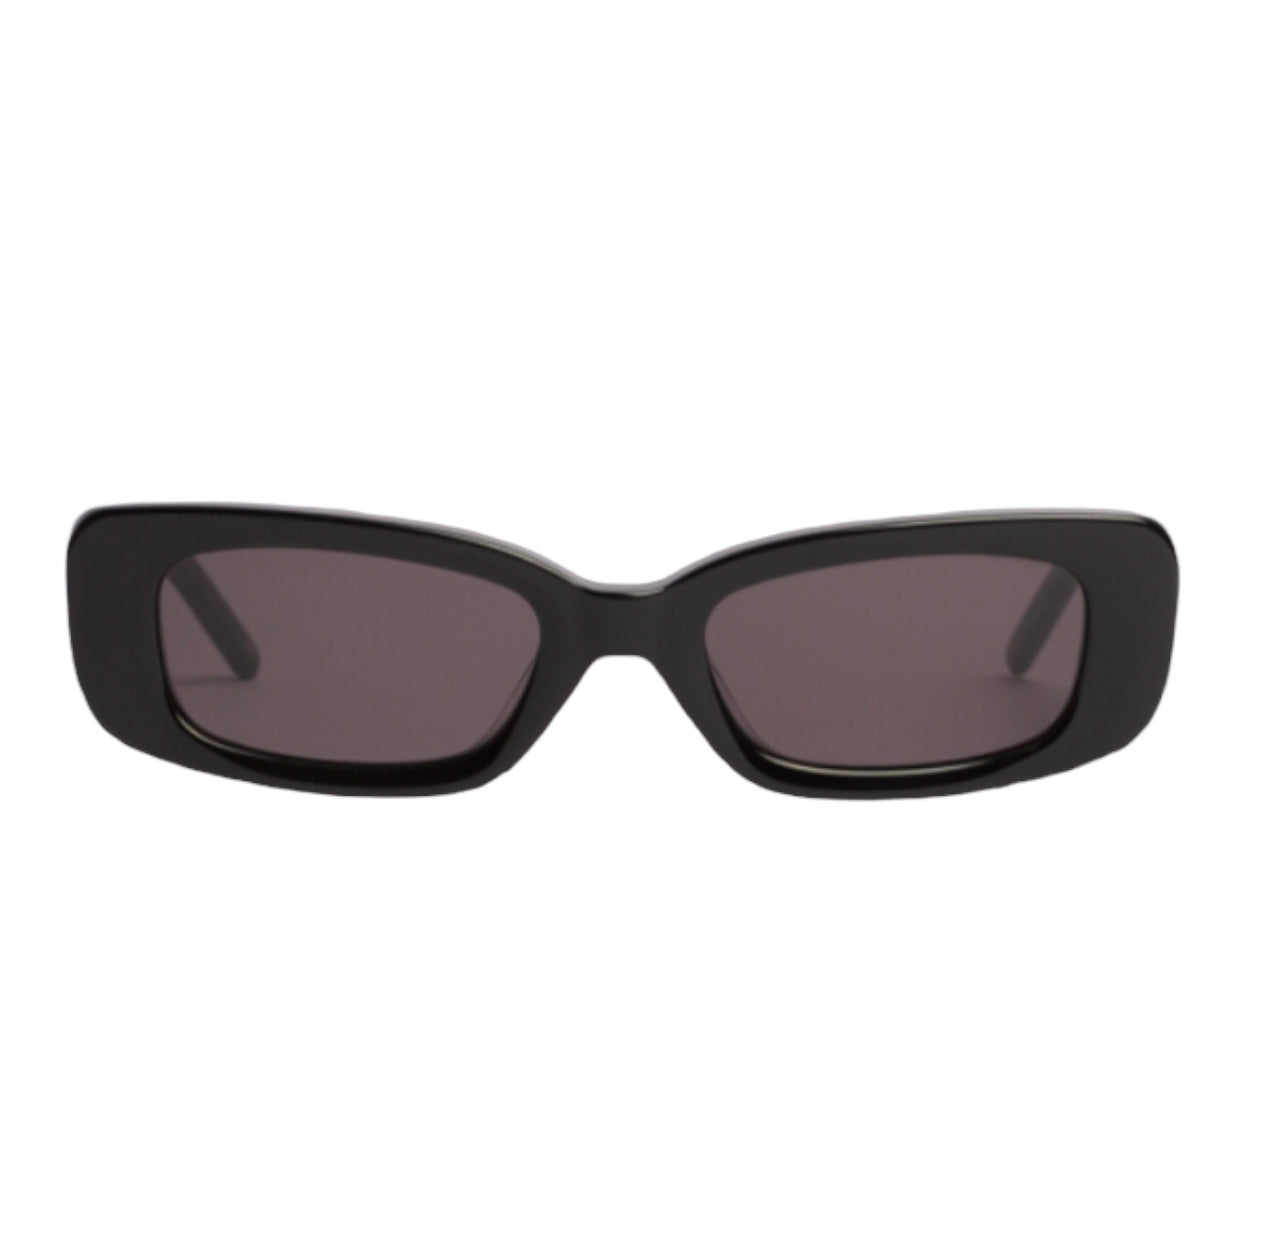 Shevoke Sunglasses - new